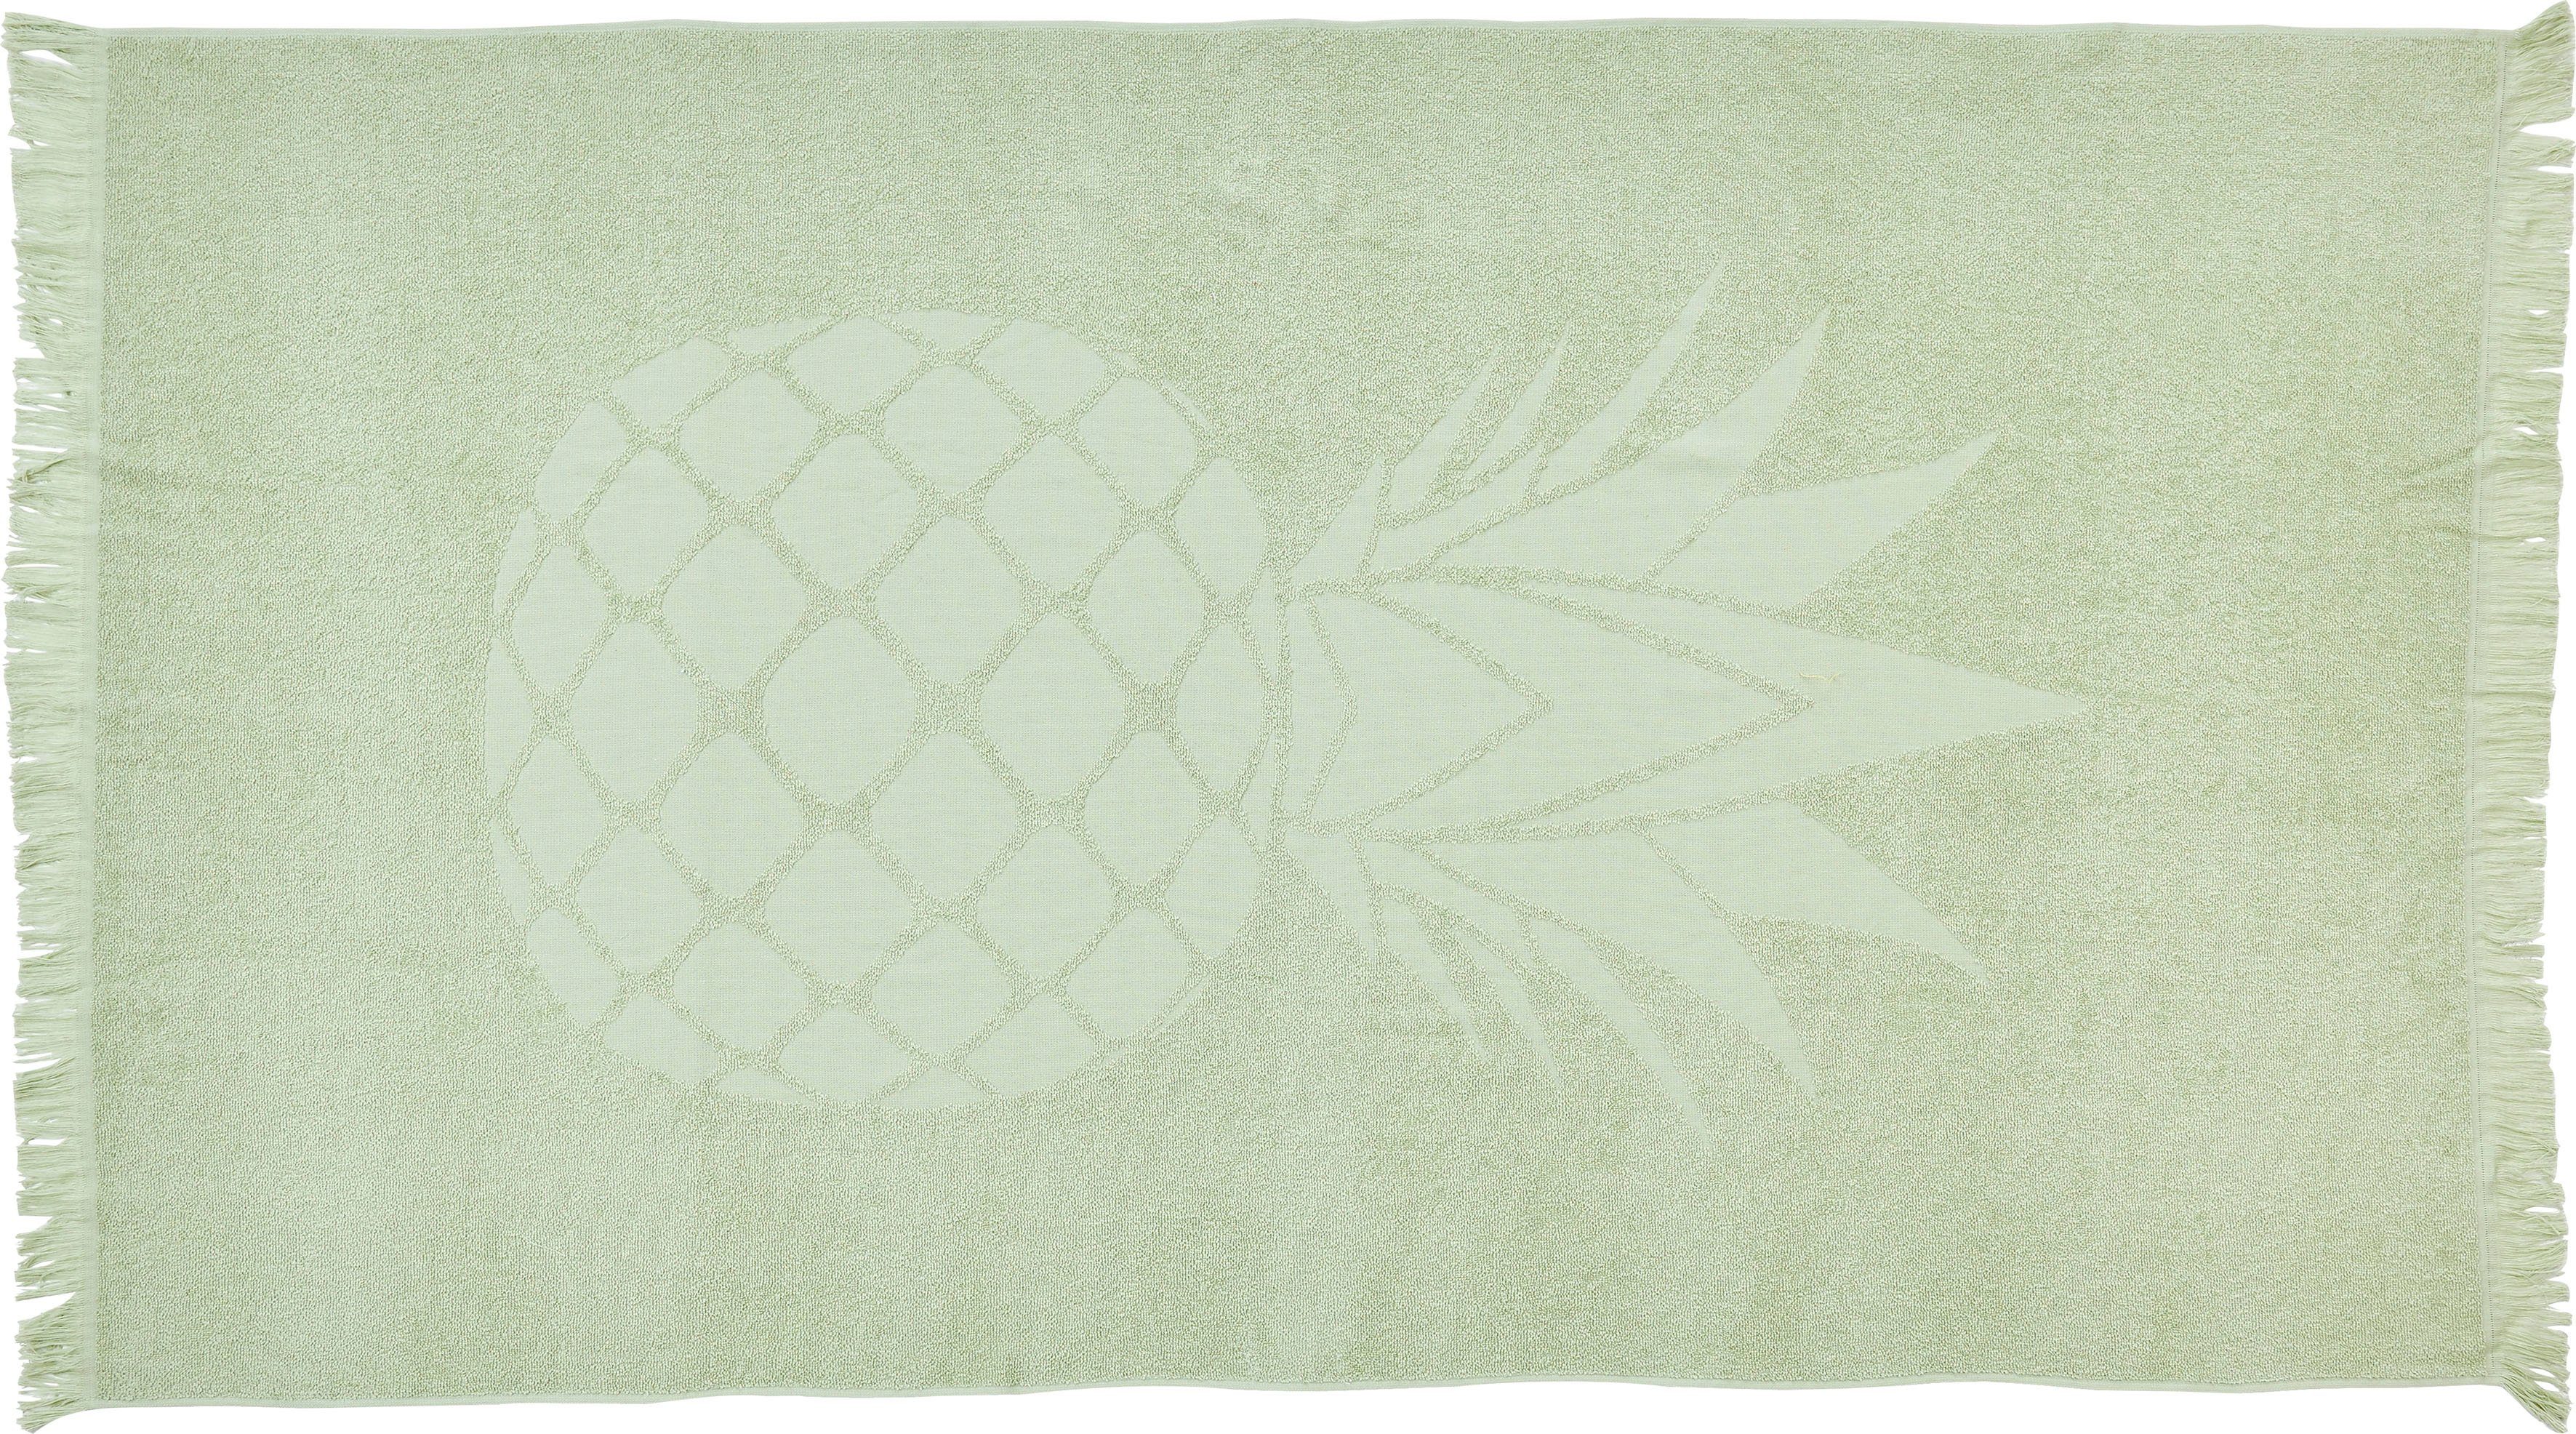 done.® Hamam-baddoeken Pineapple 90x160 cm, zachte & absorberende badstof binnenkant, unikleurig, met ananasmotief & franje, ideaal als strandlaken (1 stuk)